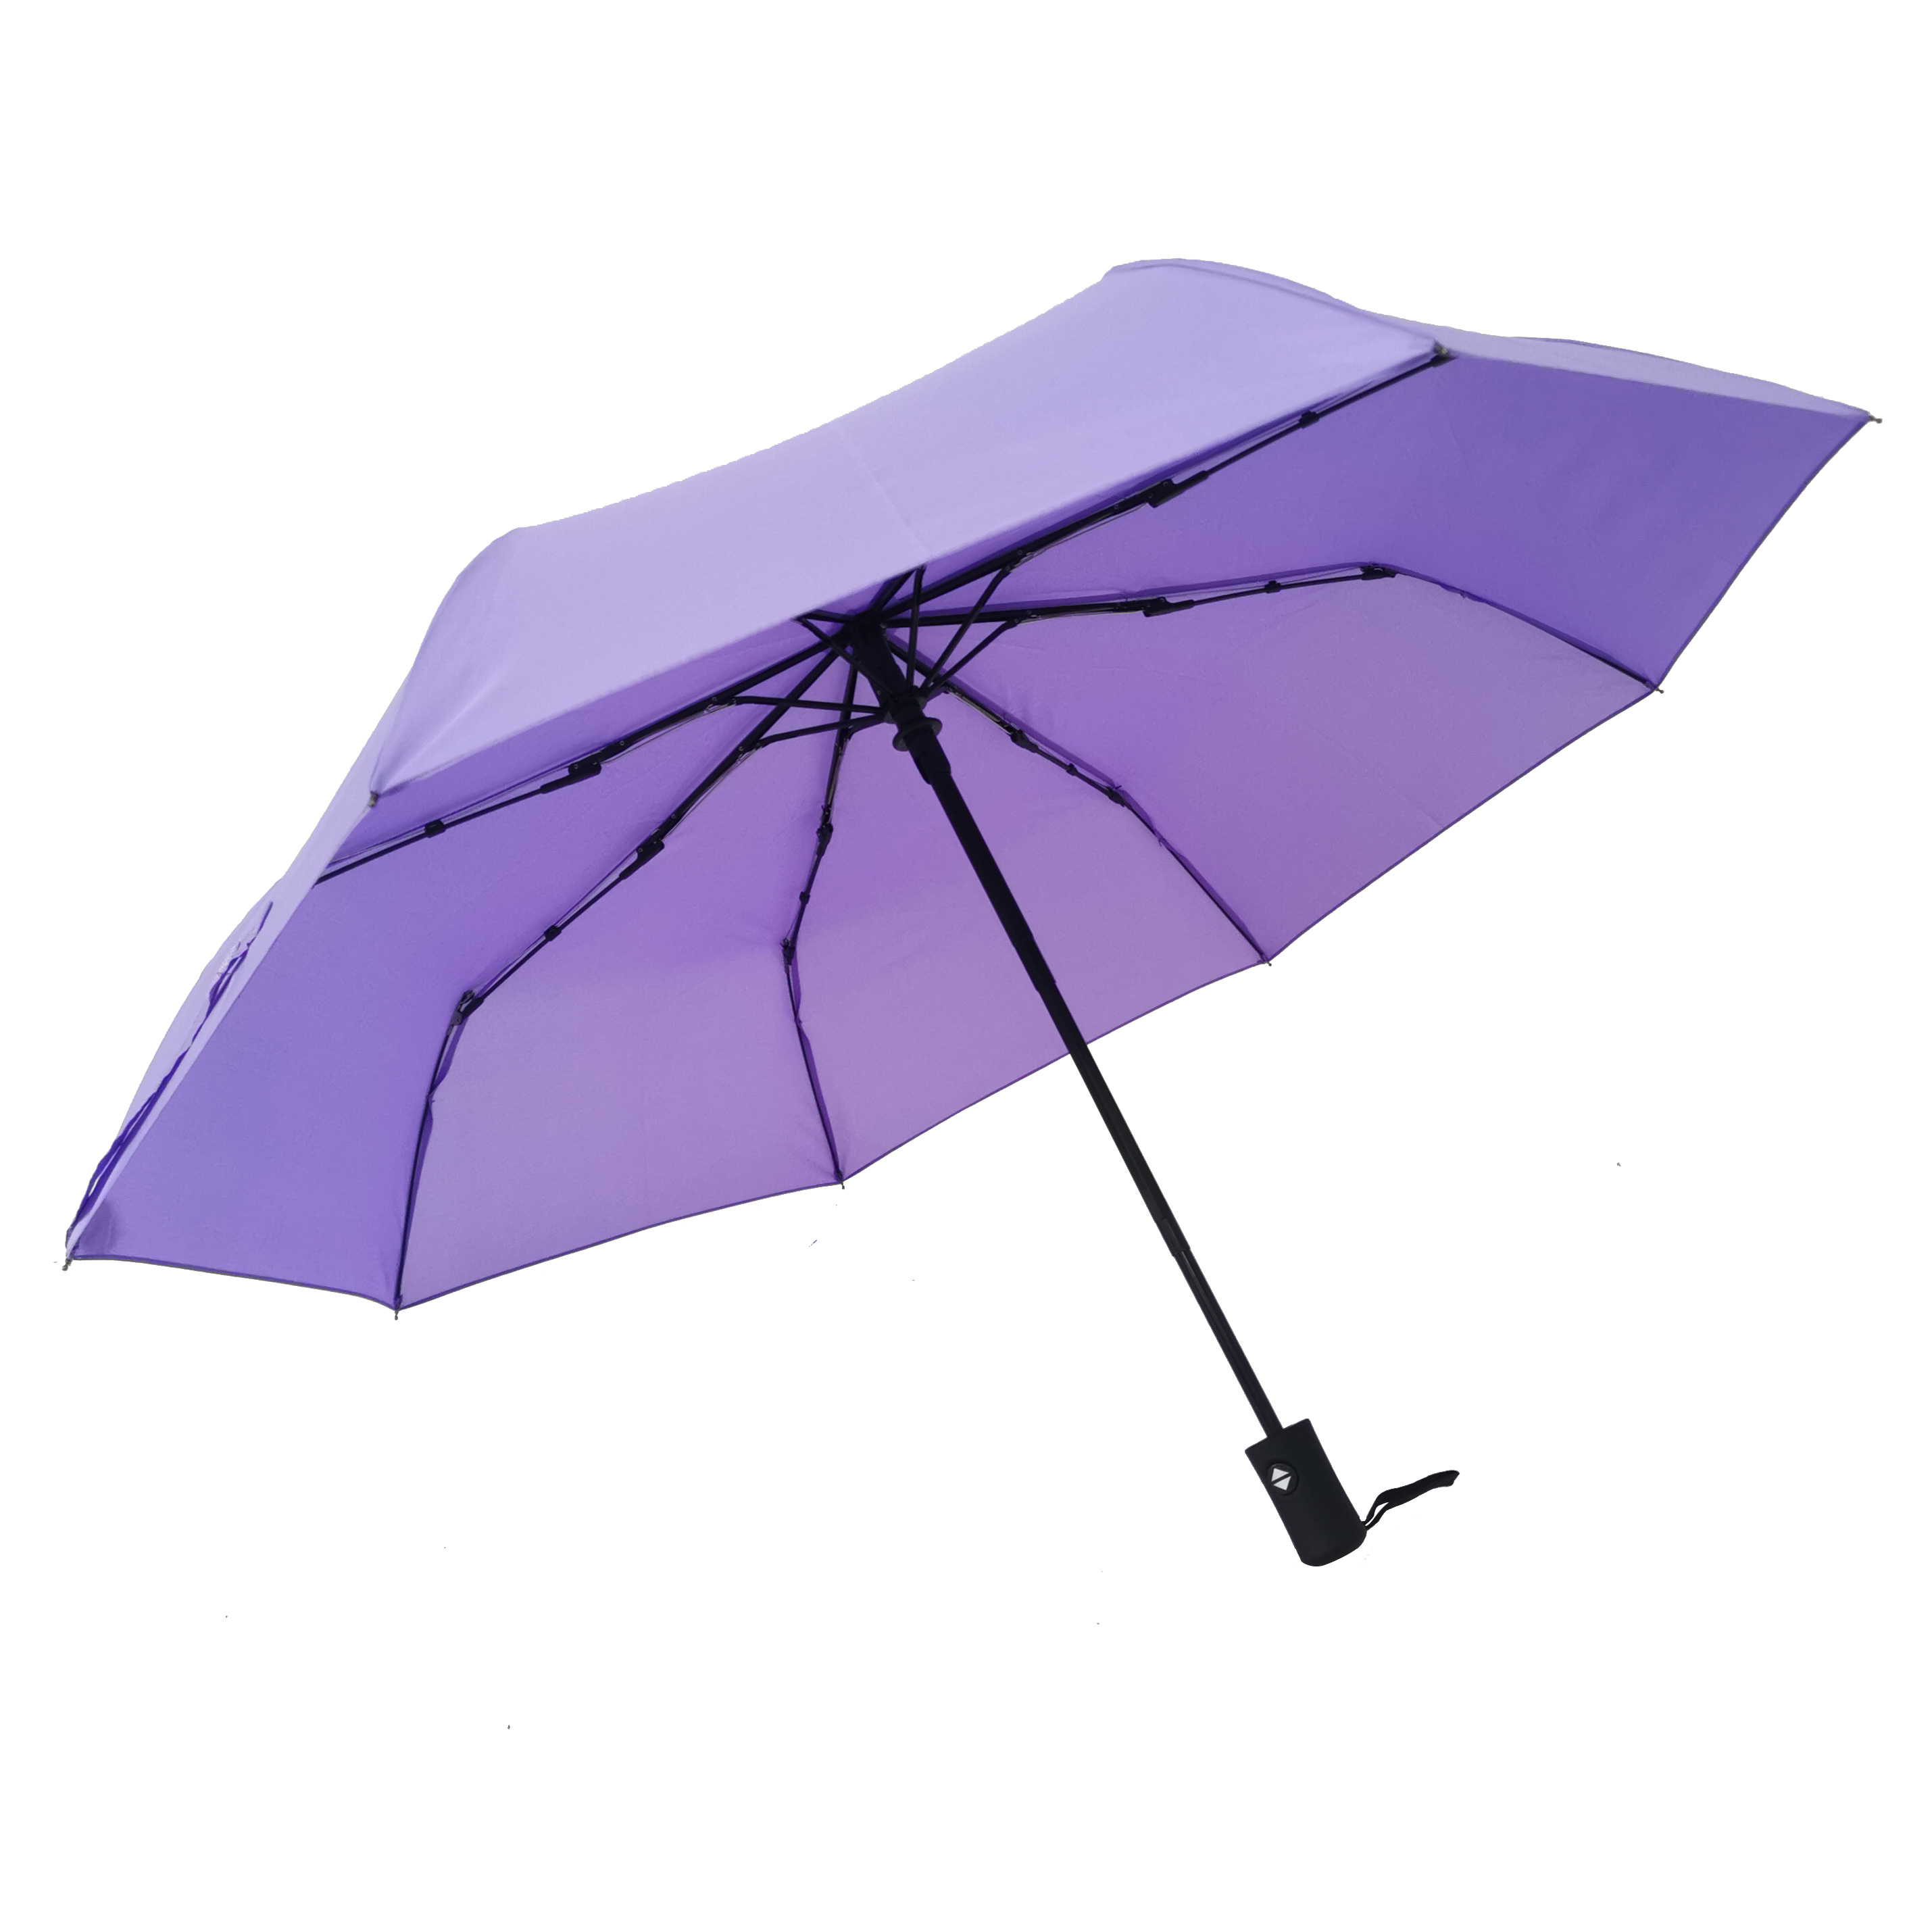 https://www.hodaumbrella.com/ultra-low-pric...lding-umbrella-product/